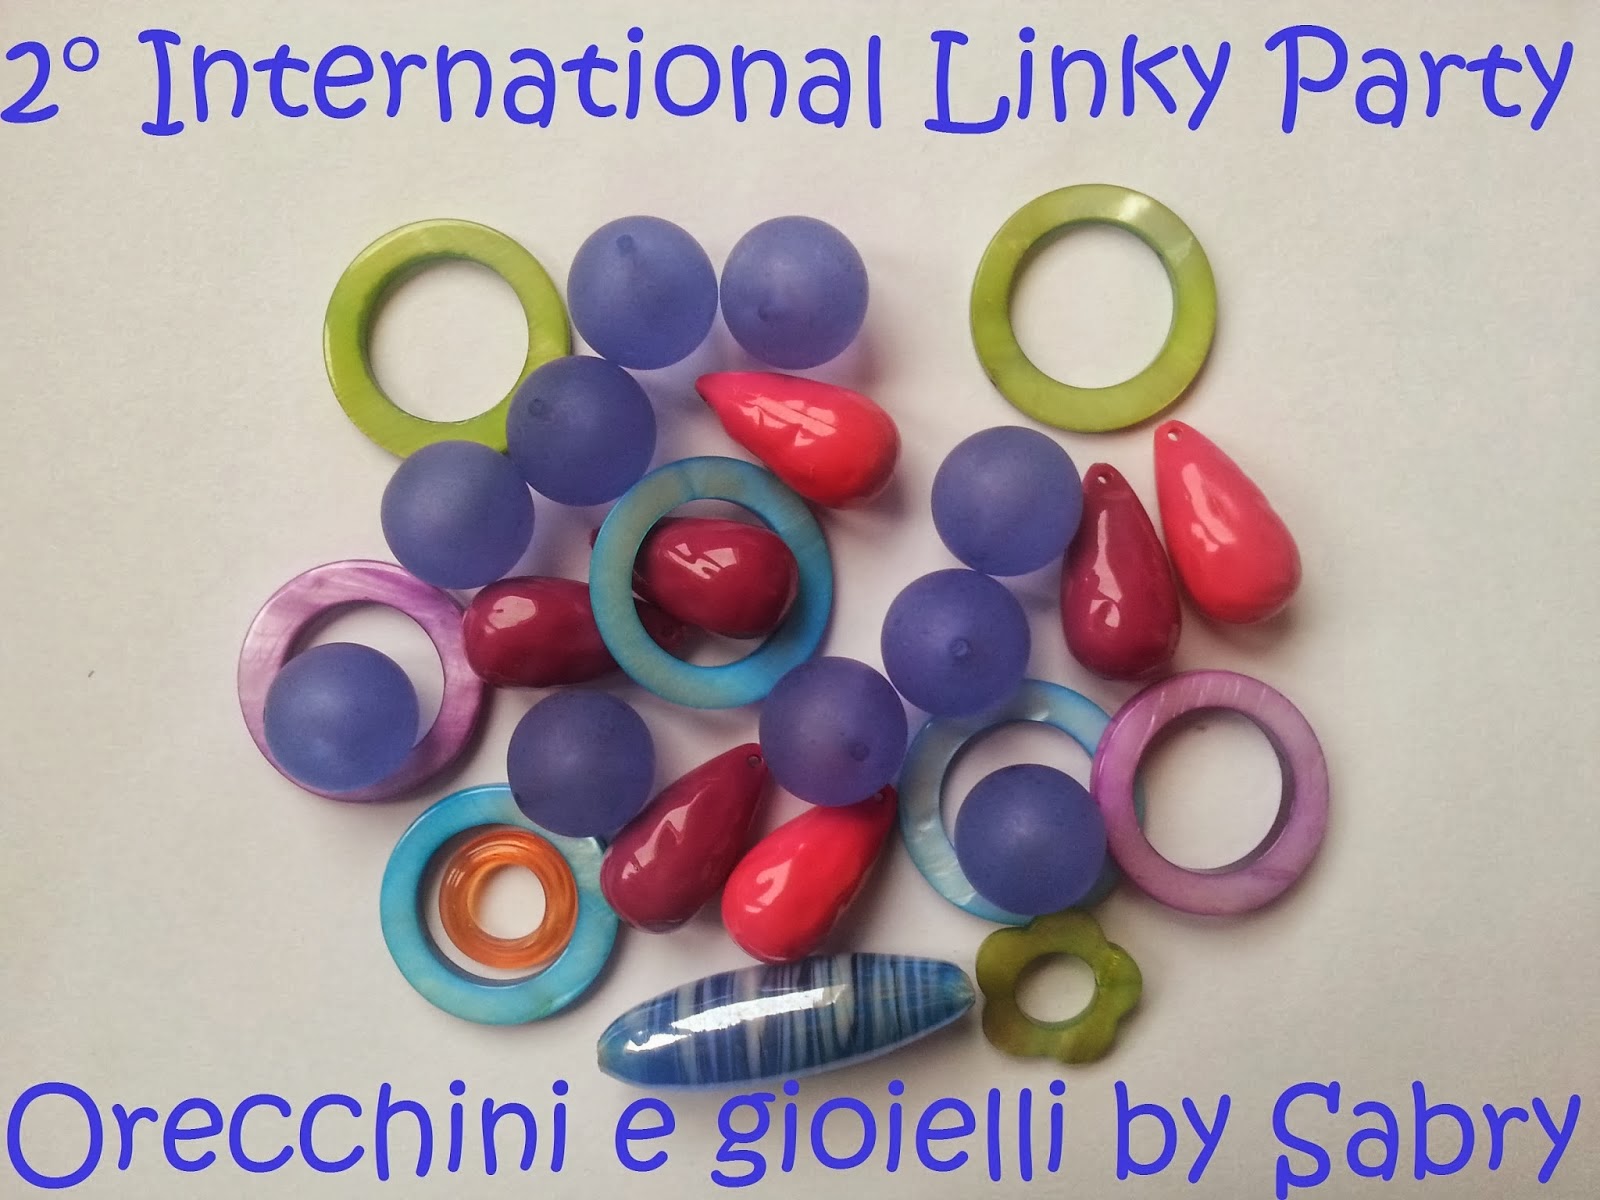 http://orecchiniegioielli.blogspot.it/2014/01/2-international-linky-party-orecchini-e.html